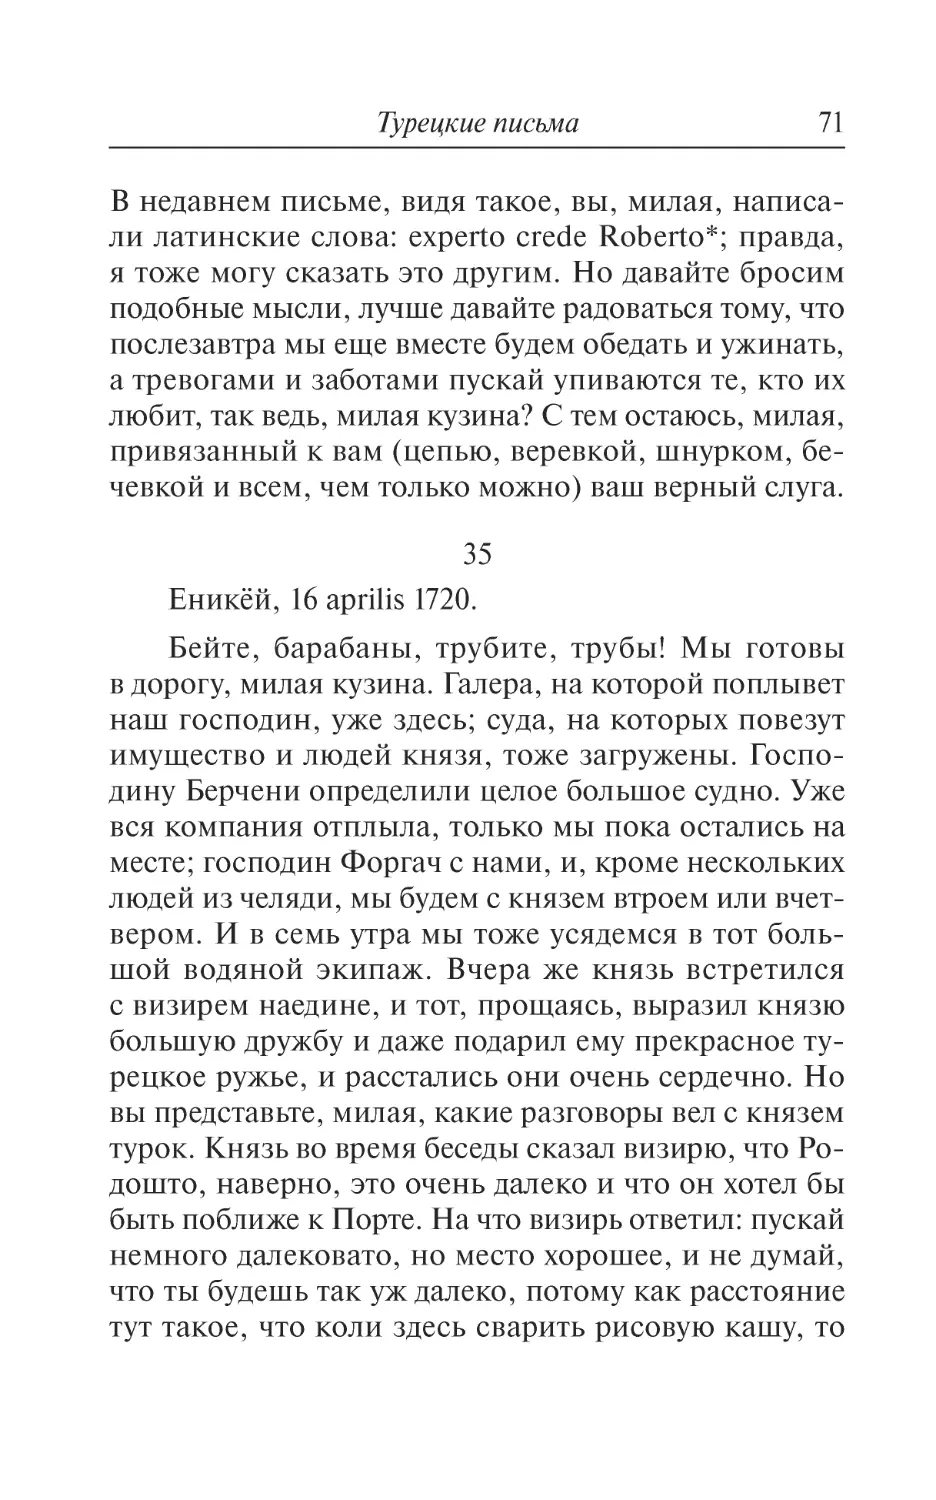 35. Еникёй, 16 aprilis 1720